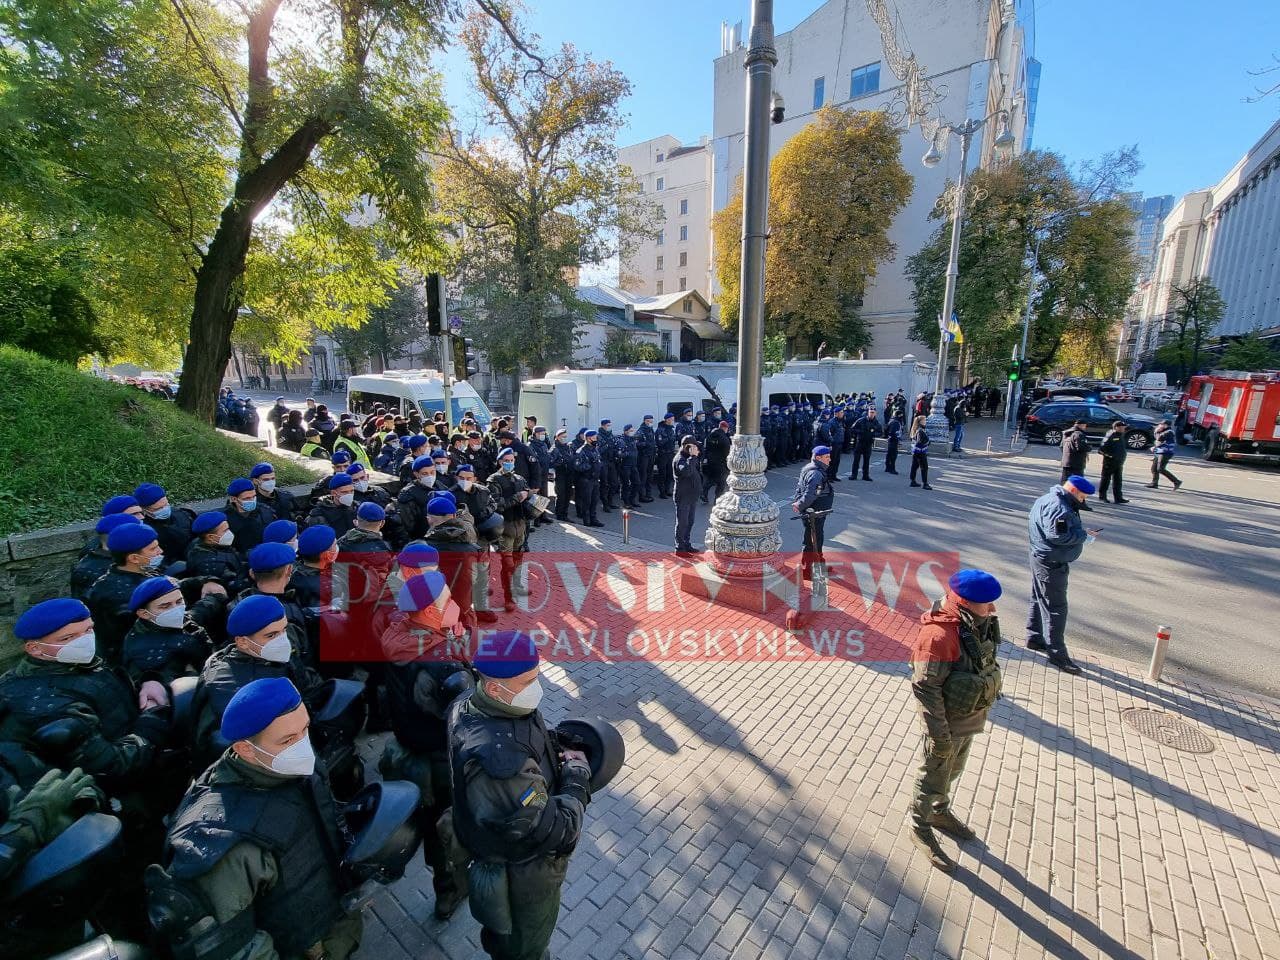 Митинг профсоюзов заблокировал центр Киева. Фото: PavlovskyNEWS